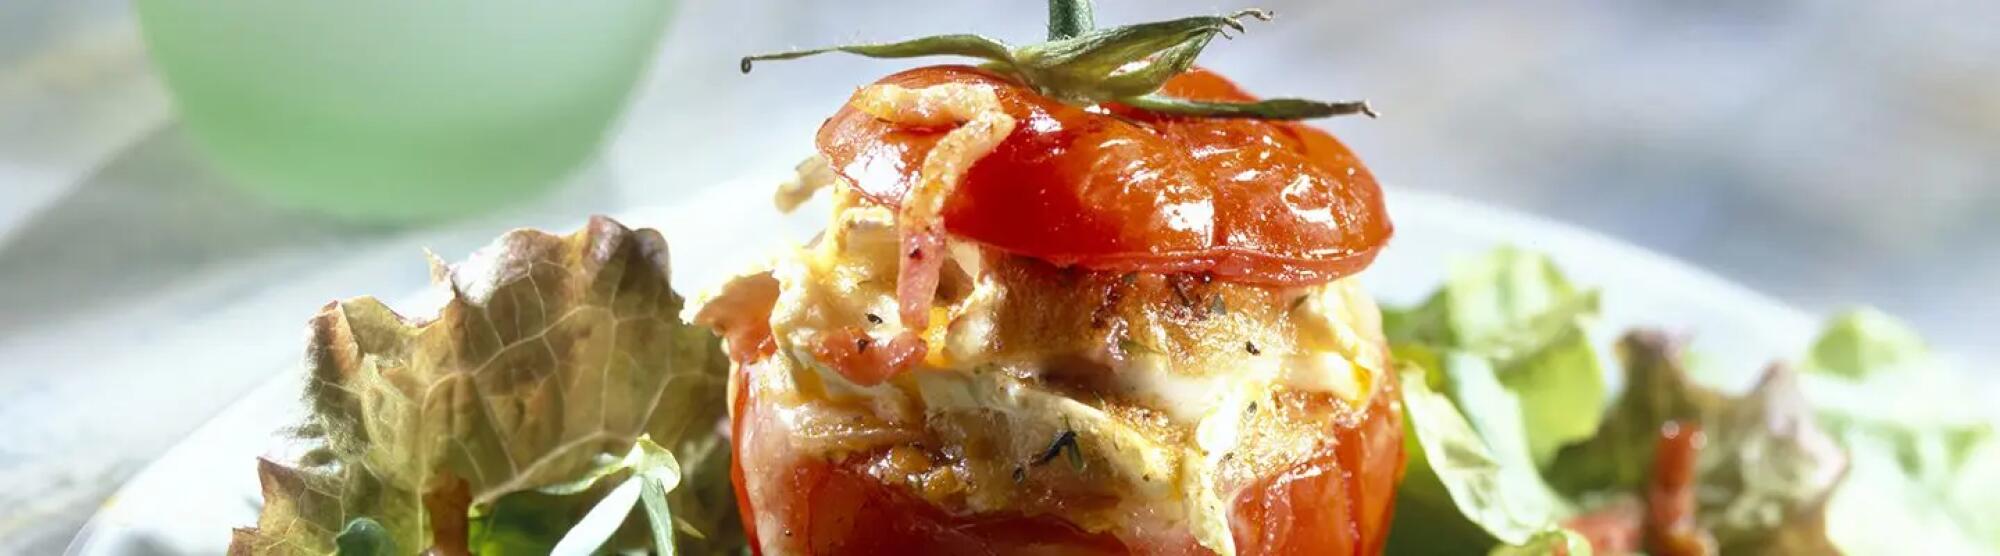 Recette : Tomate provençale farcie au fromage frais